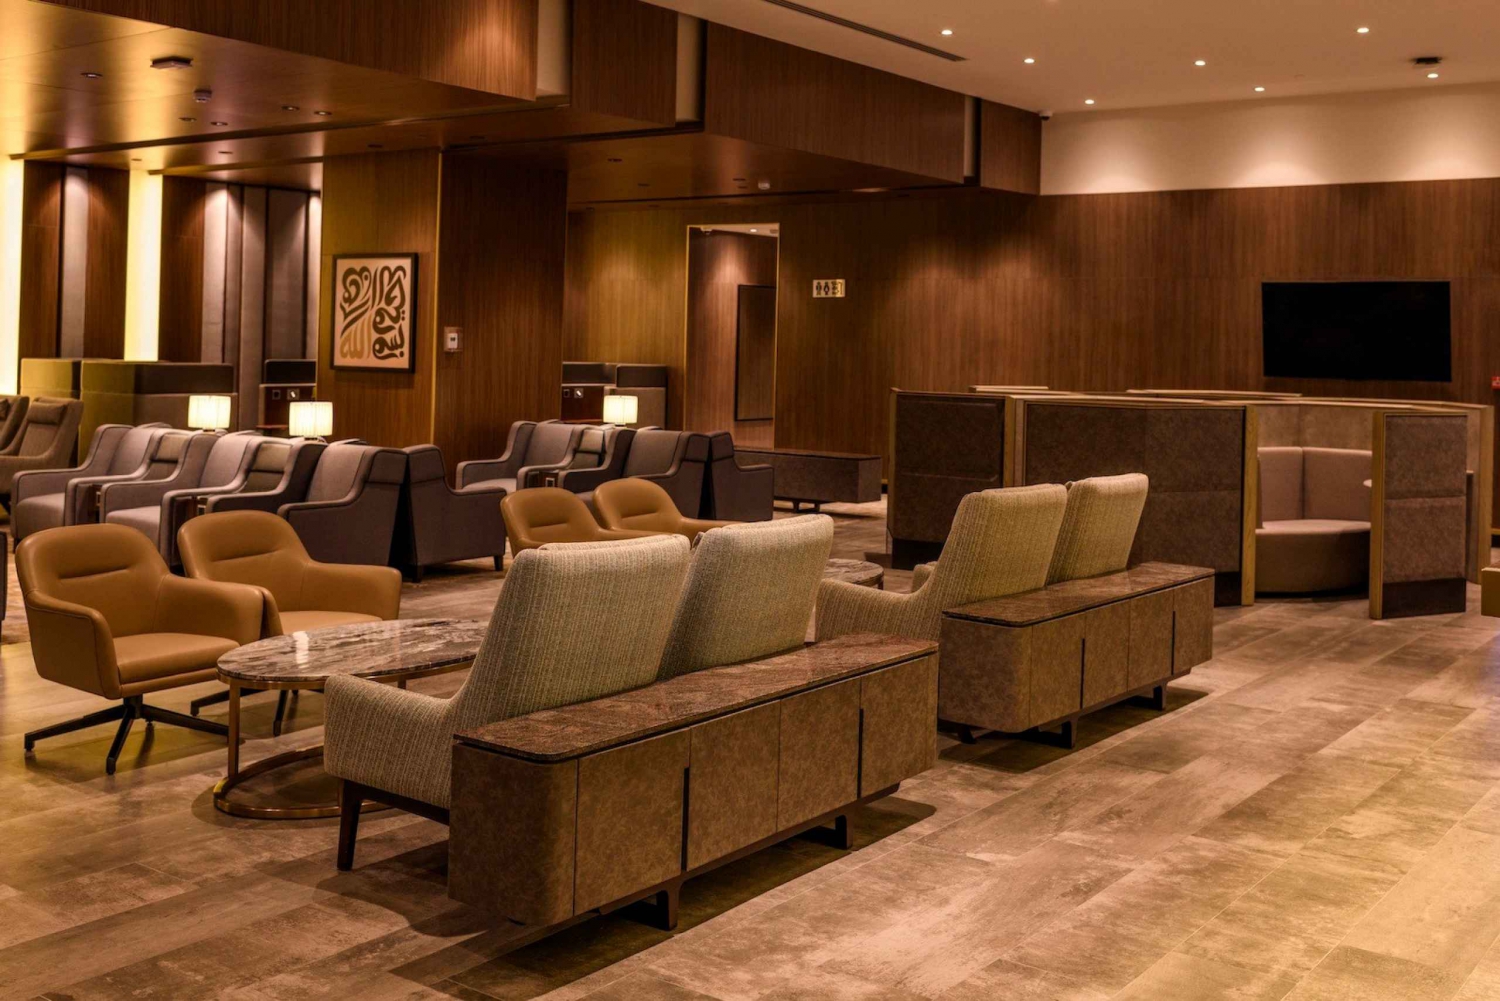 Dammam: DMM King Fahd Airport Premium Lounge Access